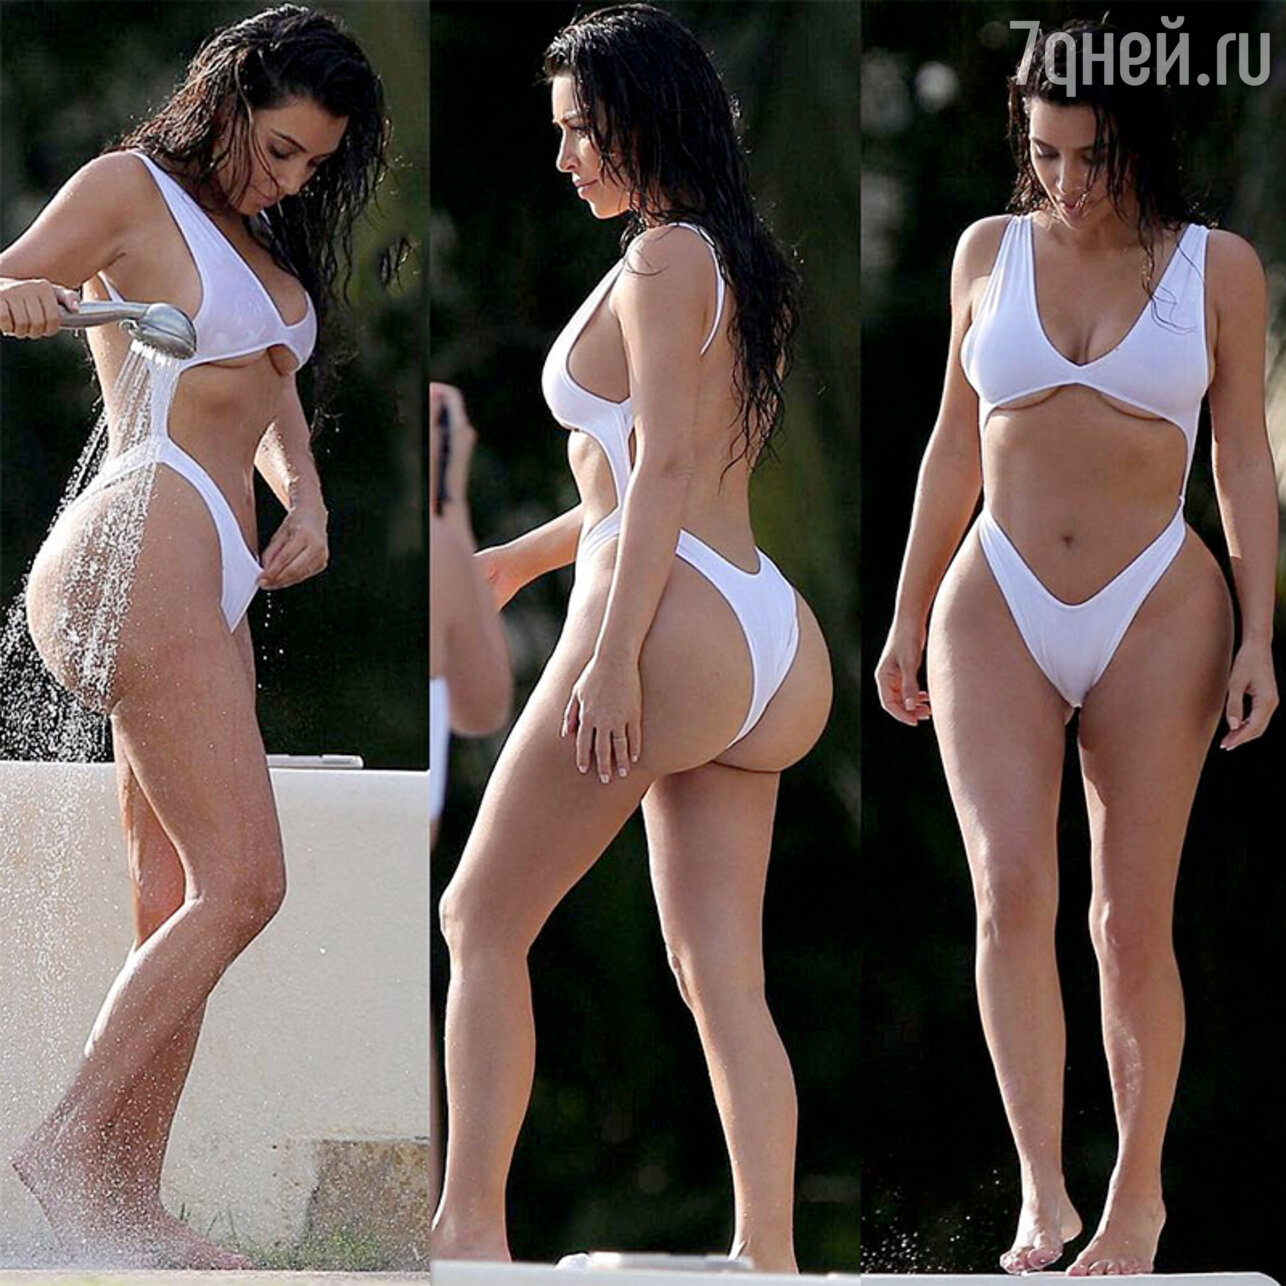 Пропорции тела Ким Кардашян - идеал, который привлекает внимание и восхищение